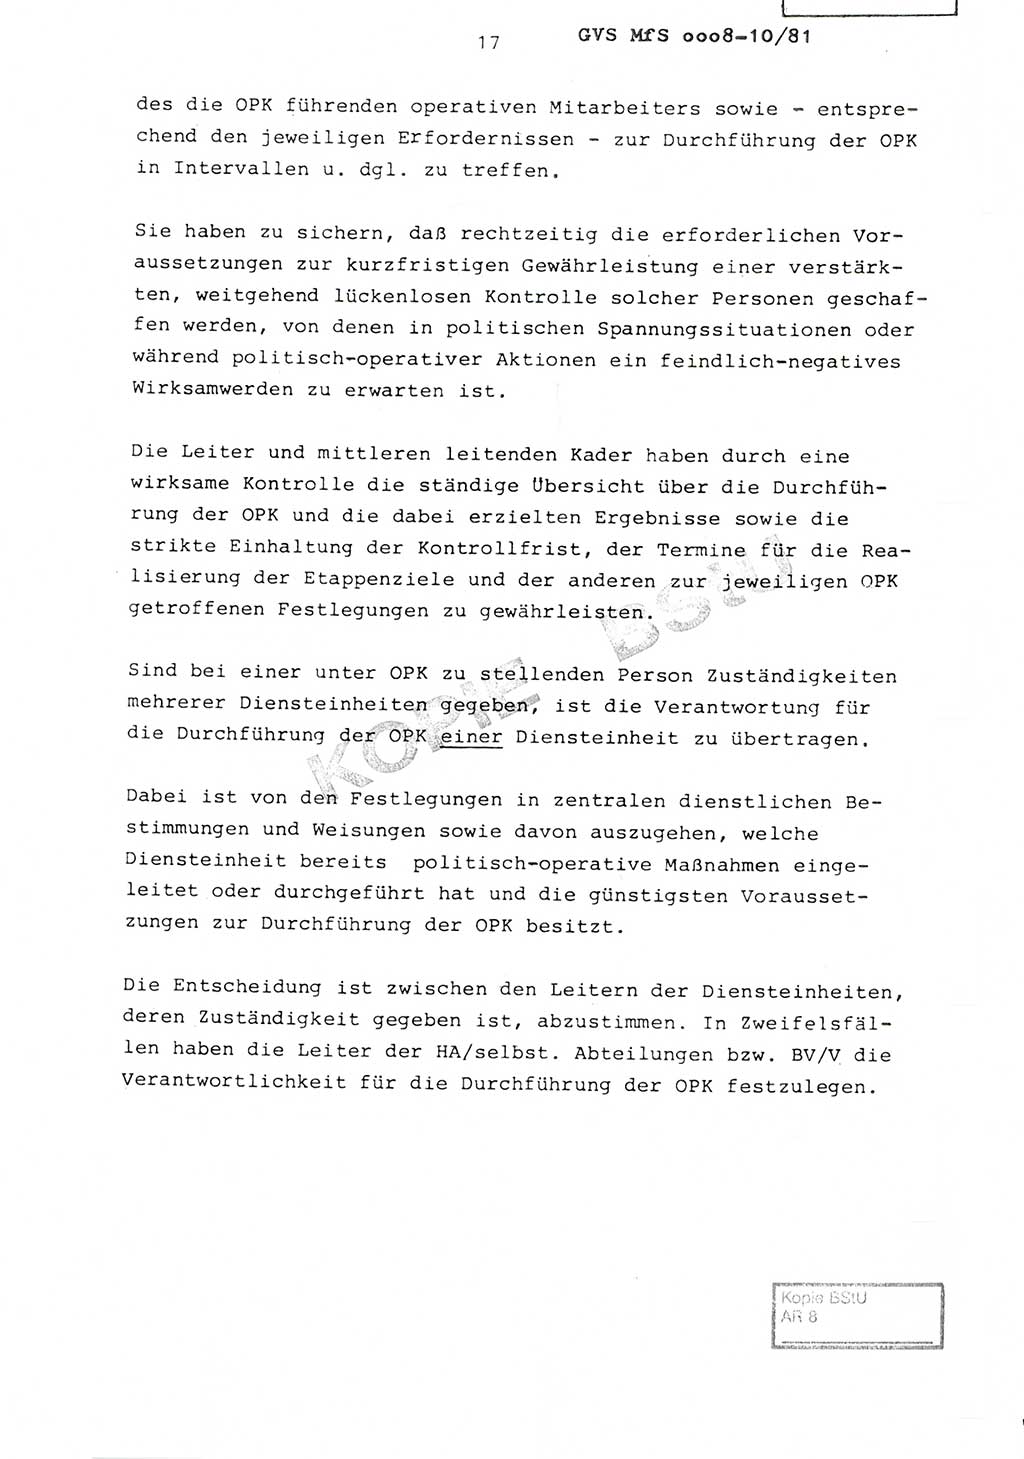 Richtlinie Nr. 1/81 über die operative Personenkontrolle (OPK), Ministerium für Staatssicherheit (MfS) [Deutsche Demokratische Republik (DDR)], Der Minister, Geheime Verschlußsache (GVS) ooo8-10/81, Berlin 1981, Blatt 17 (RL 1/81 OPK DDR MfS Min. GVS ooo8-10/81 1981, Bl. 17)